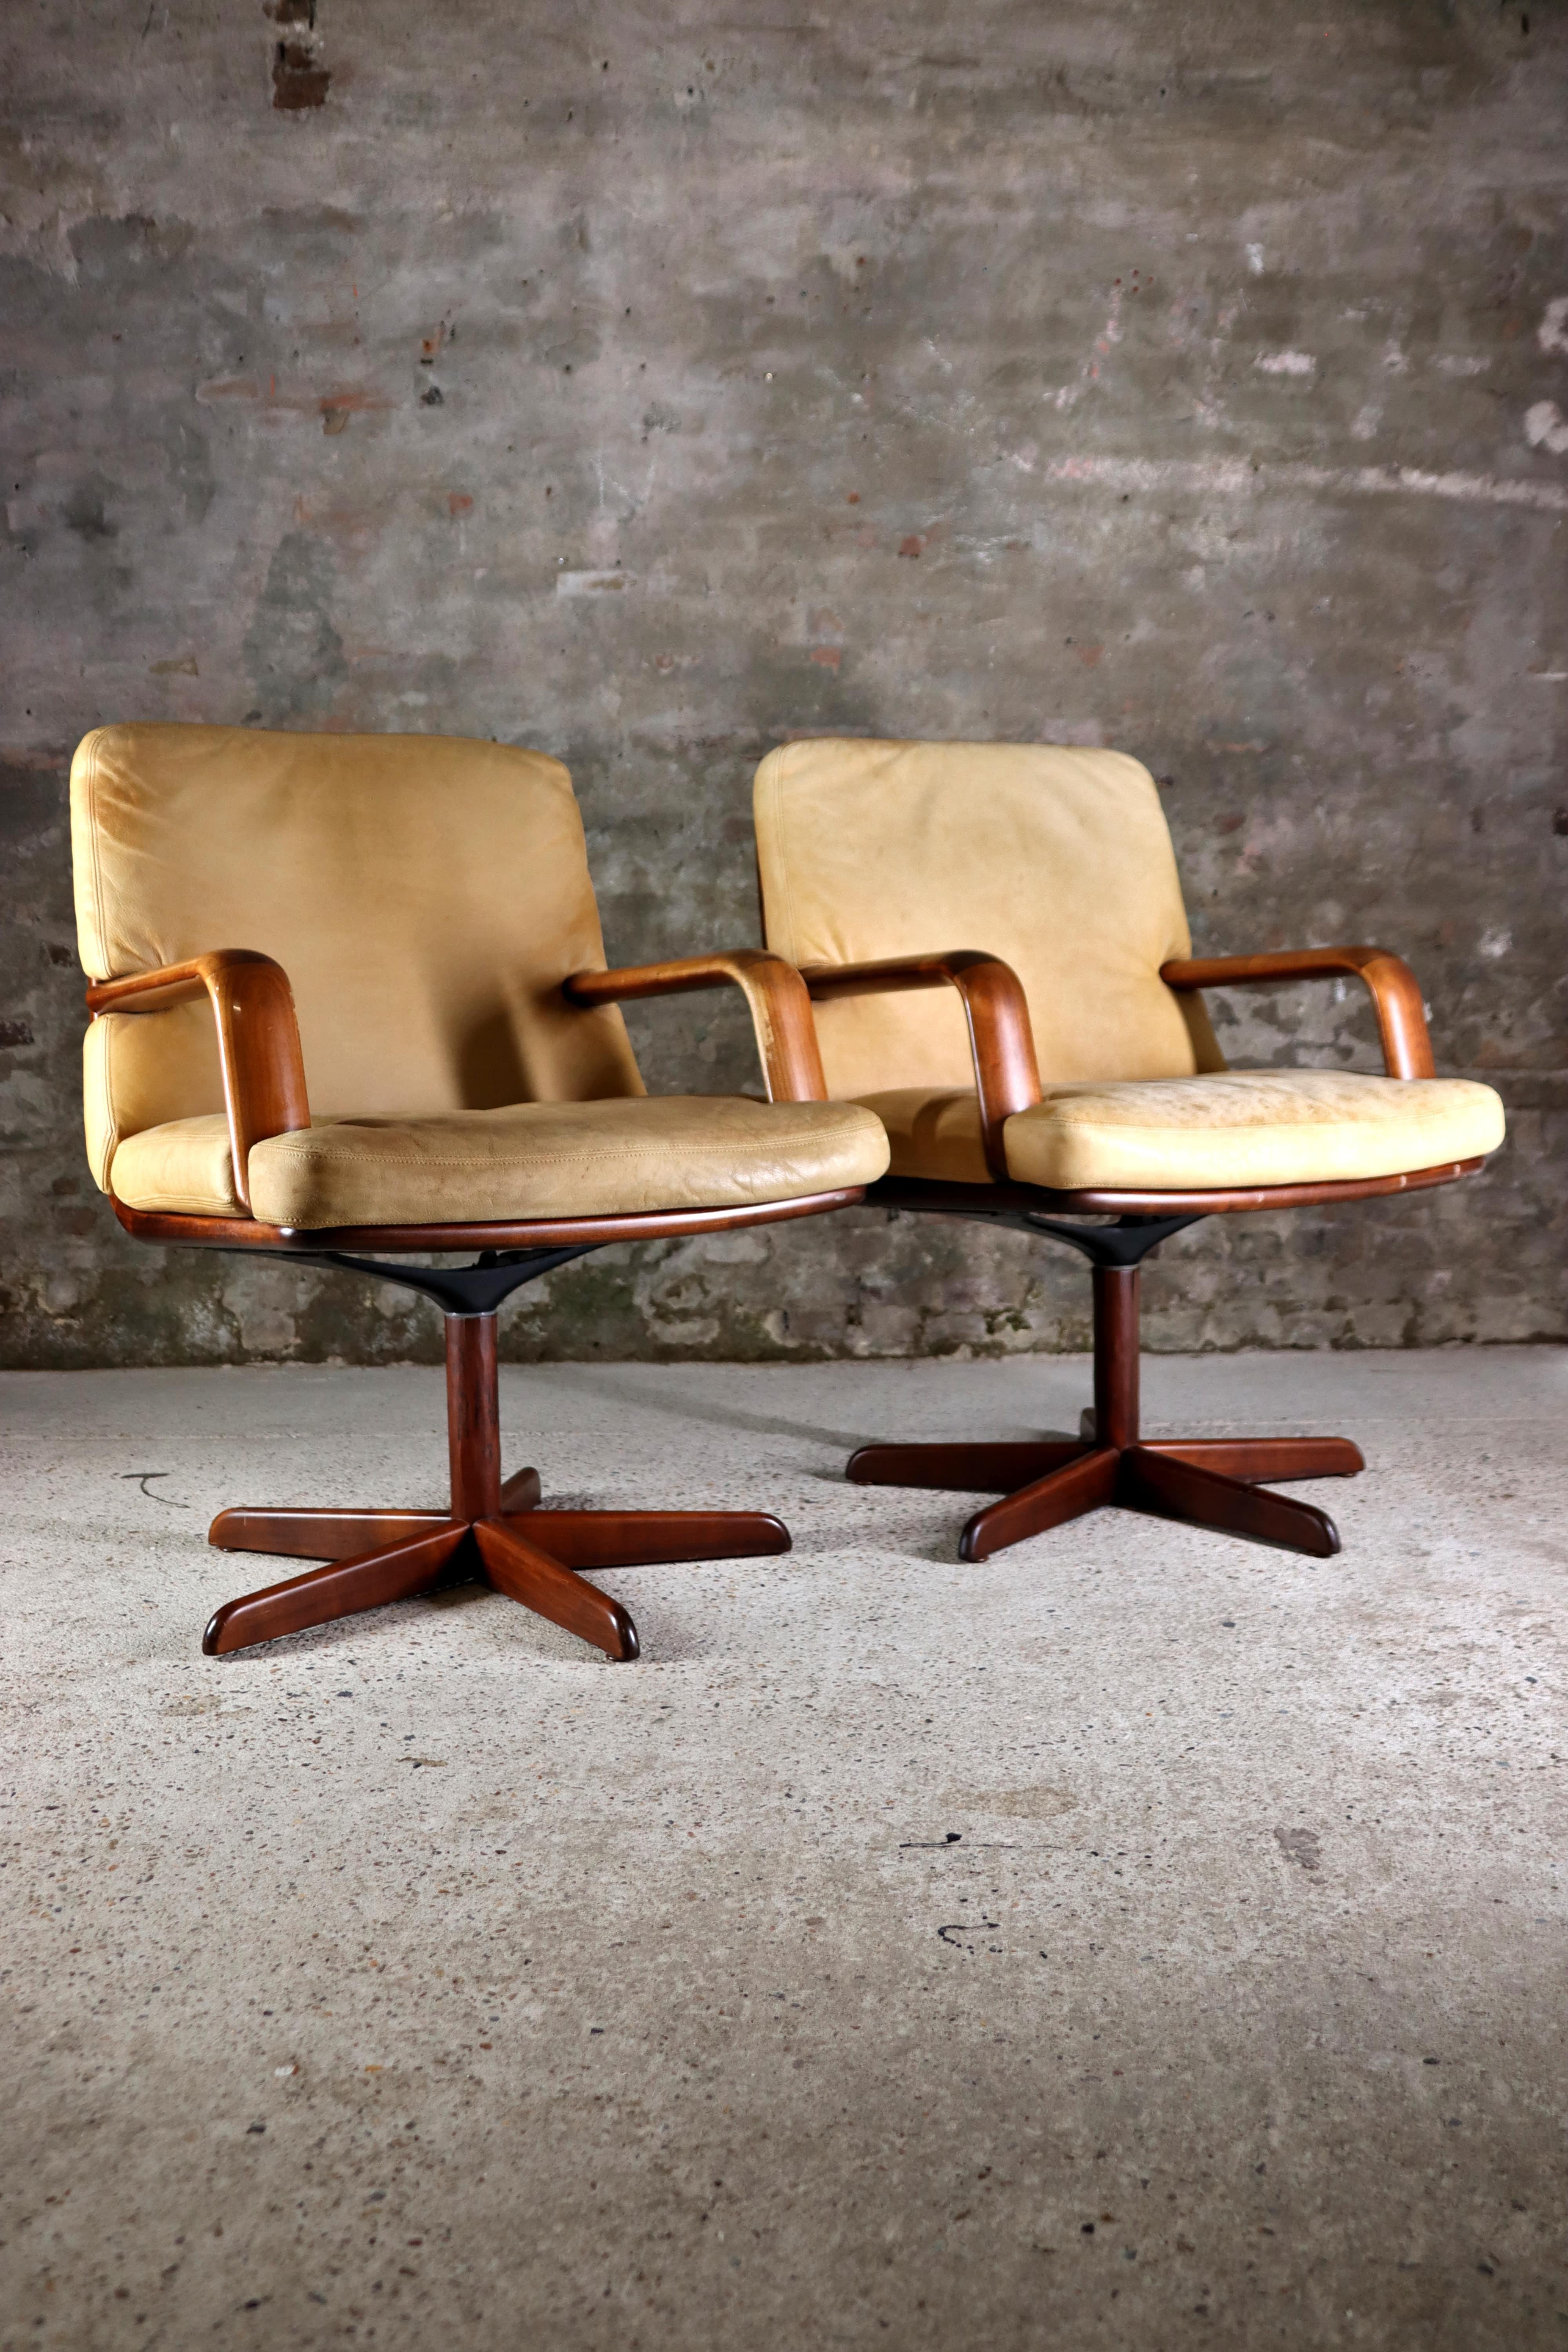 Ces superbes chaises Don ont été conçues par Bernd Münzebrock pour Walter Knoll, Allemagne, dans les années 1970. Le modèle de la chaise est 